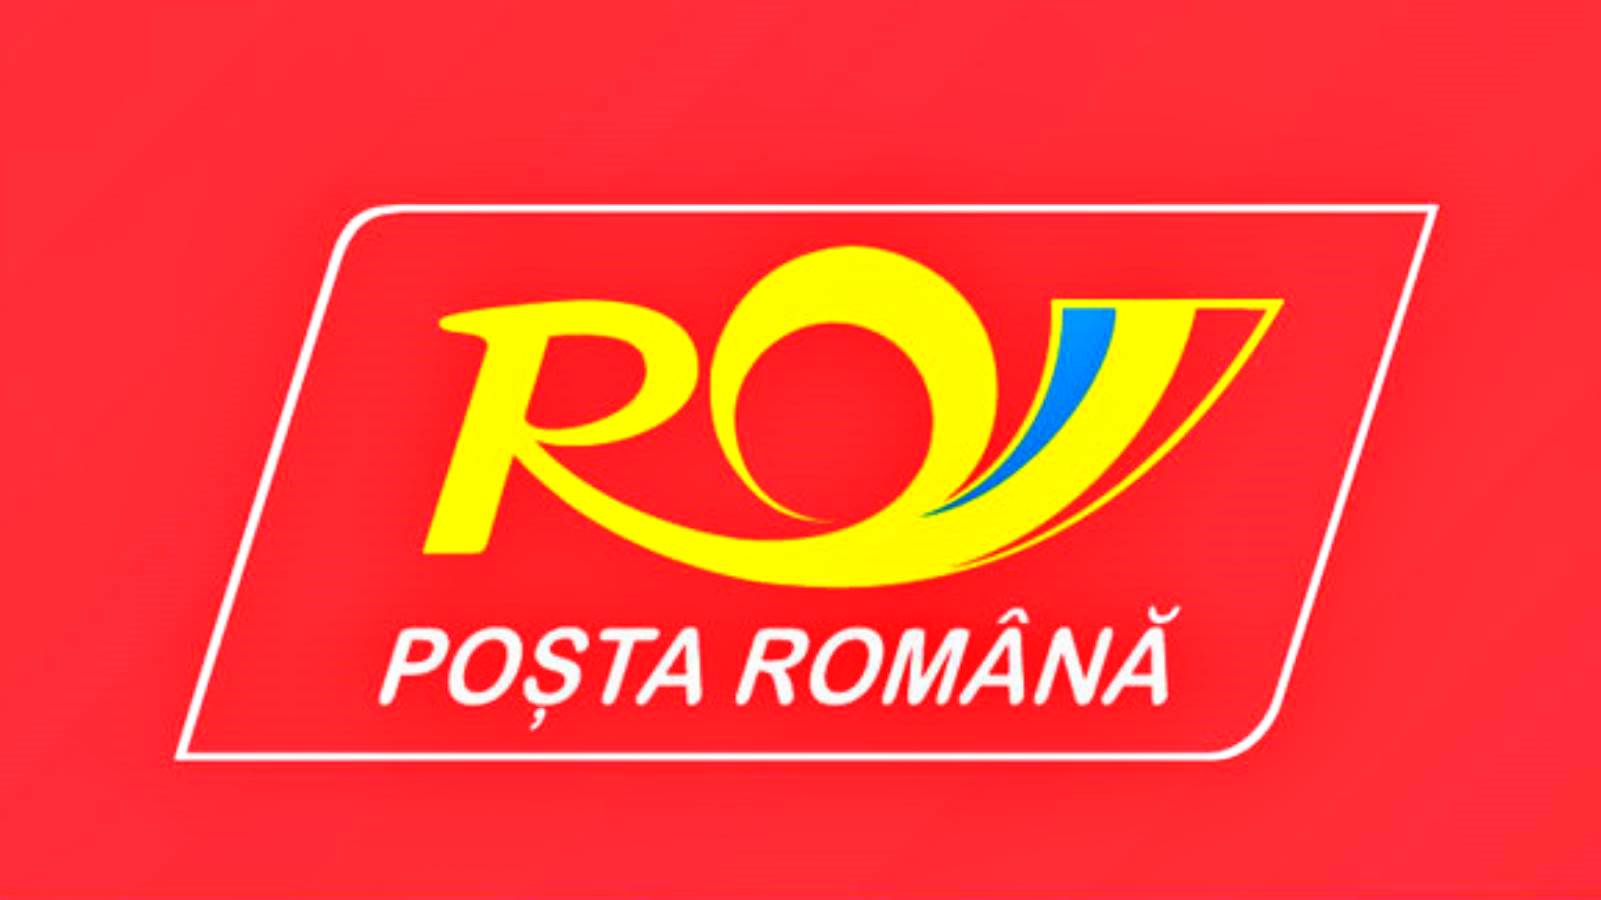 L'aide humanitaire post-roumaine amenée au bureau